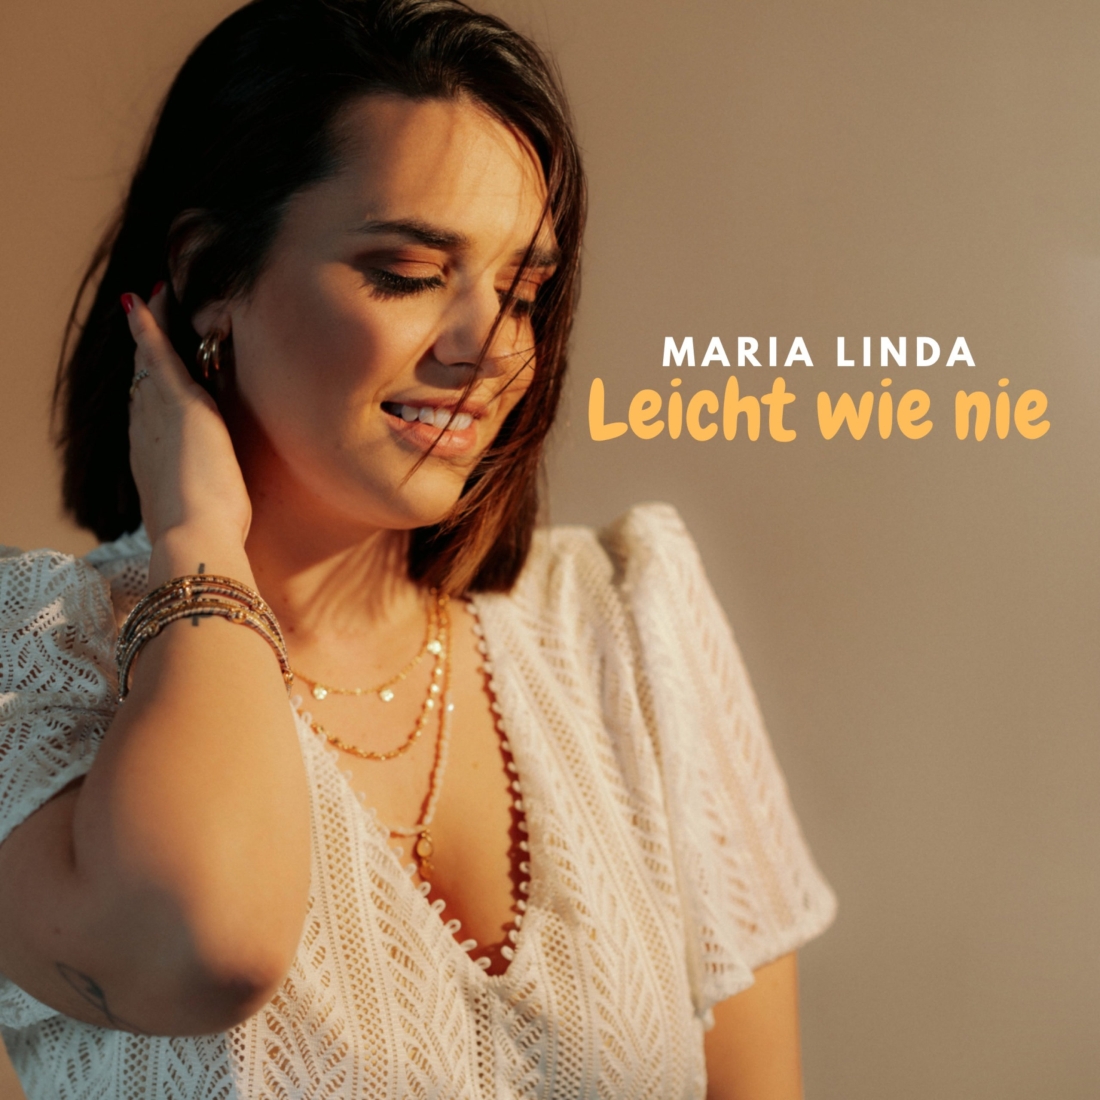 Maria Linda - Leicht wie nie (Fiesta Records)